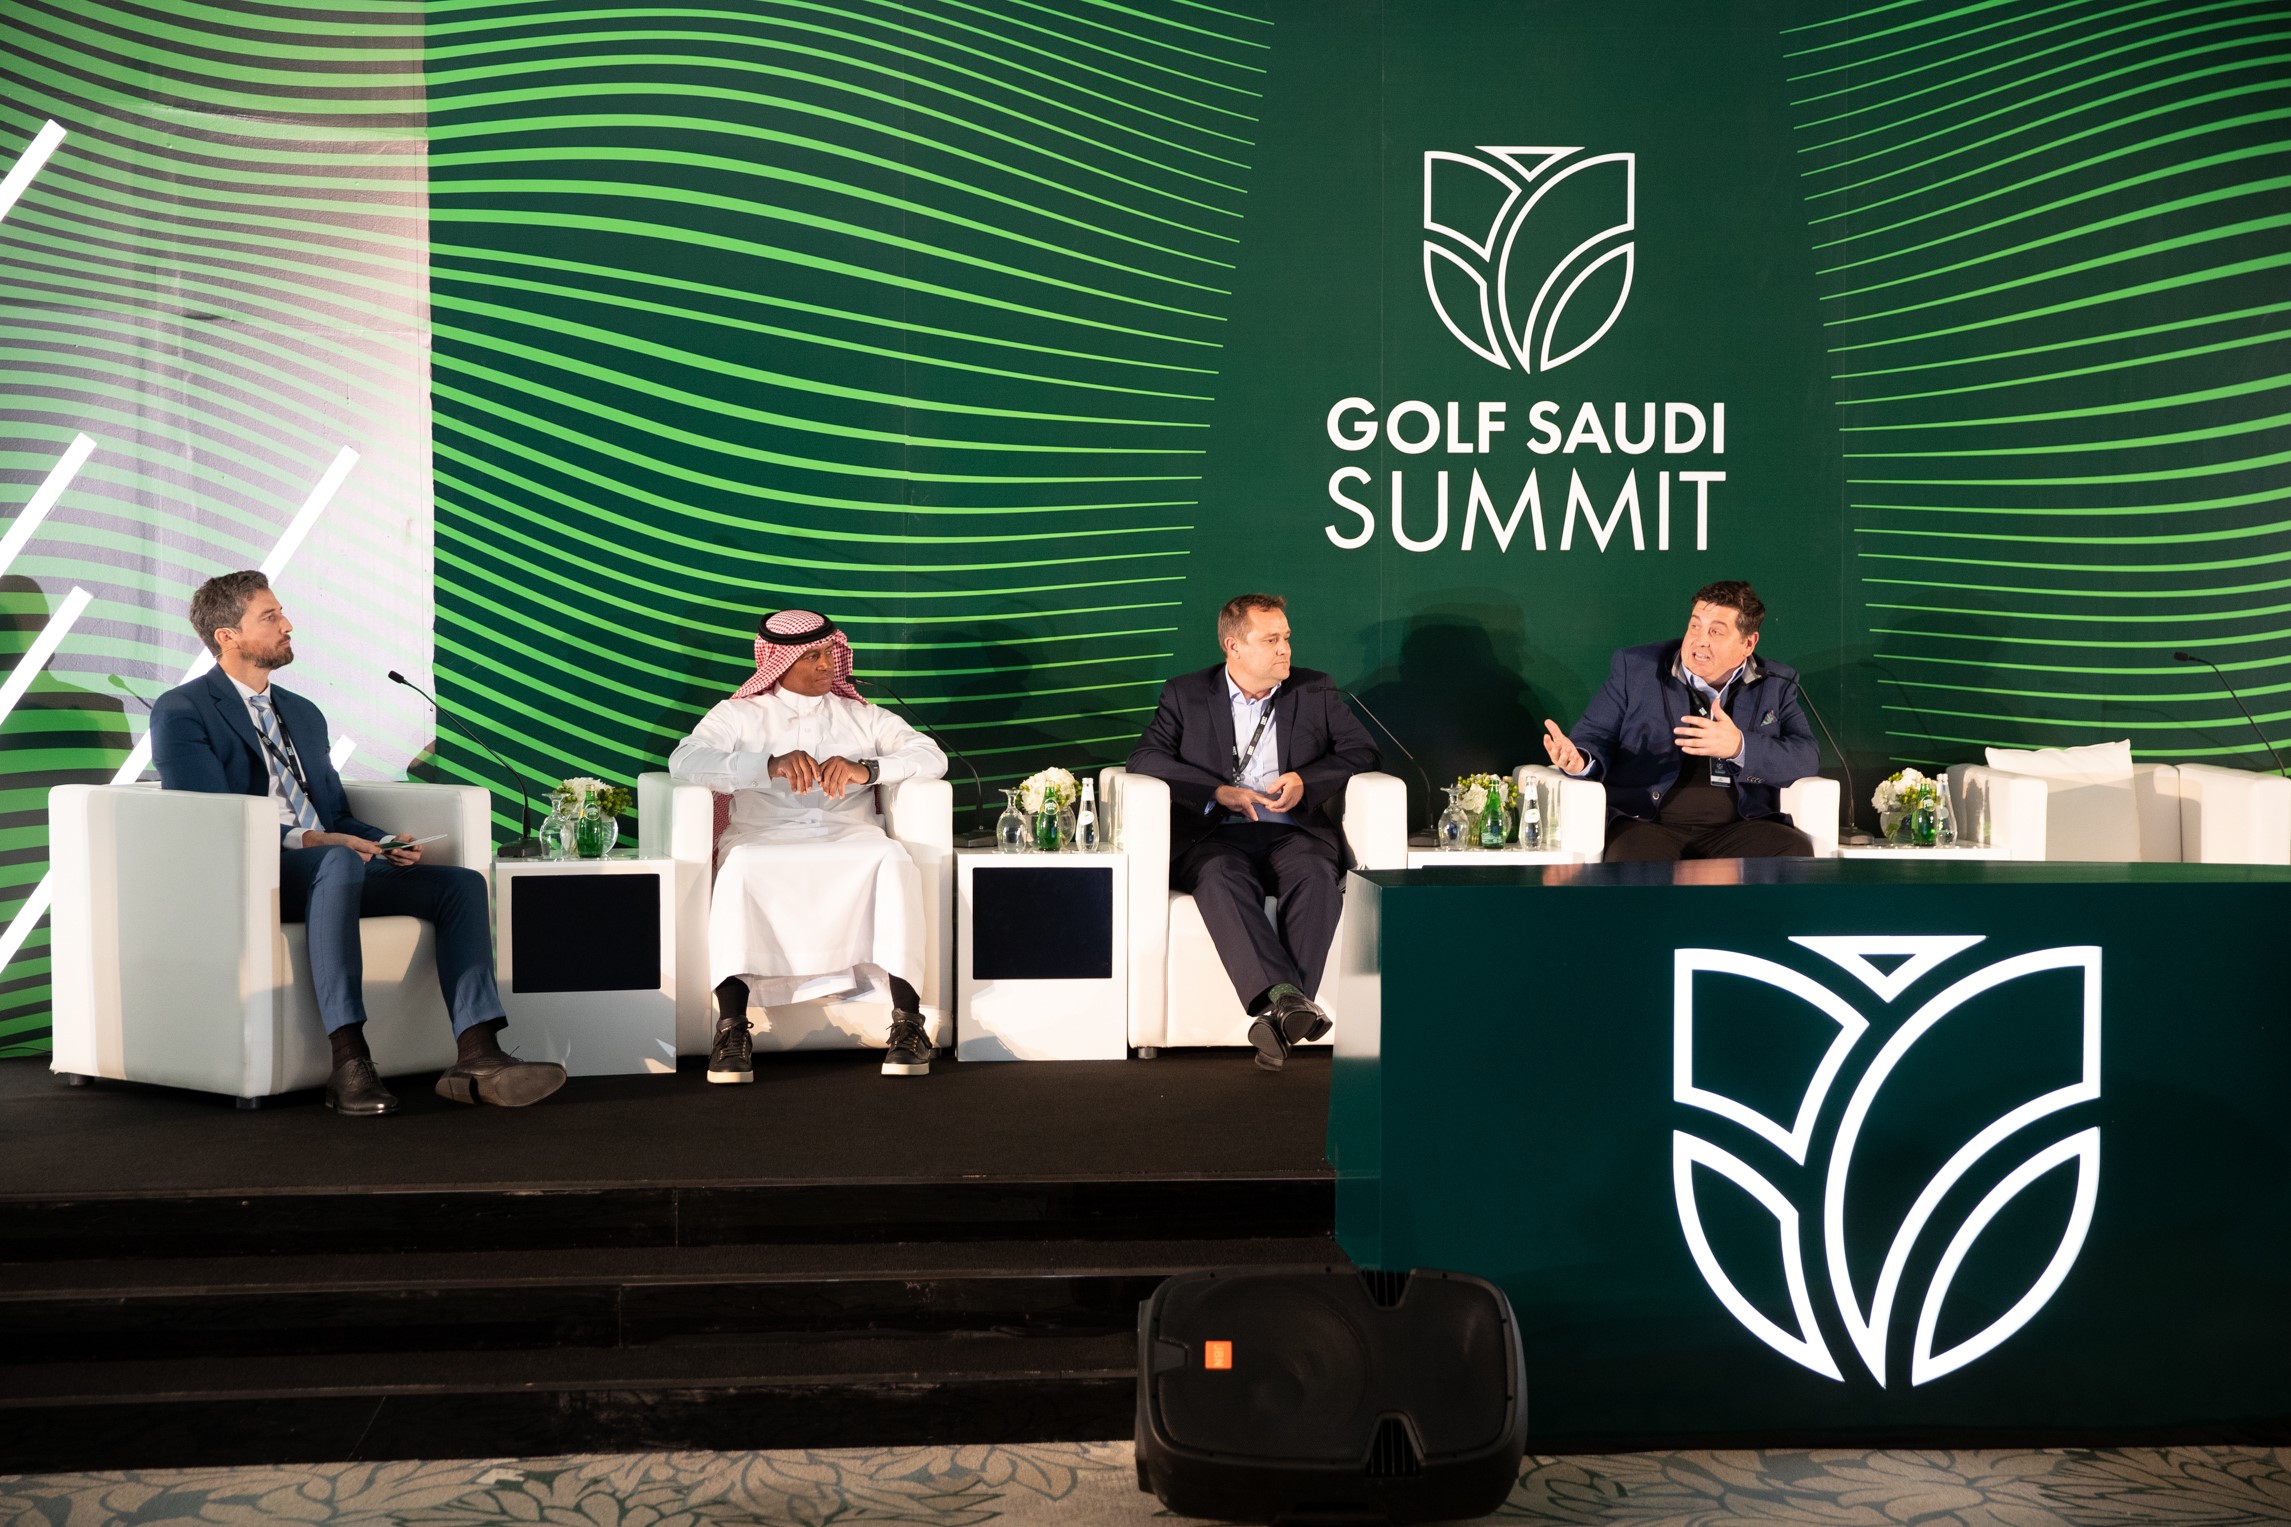 Golf Saudi Summit Gets Underway